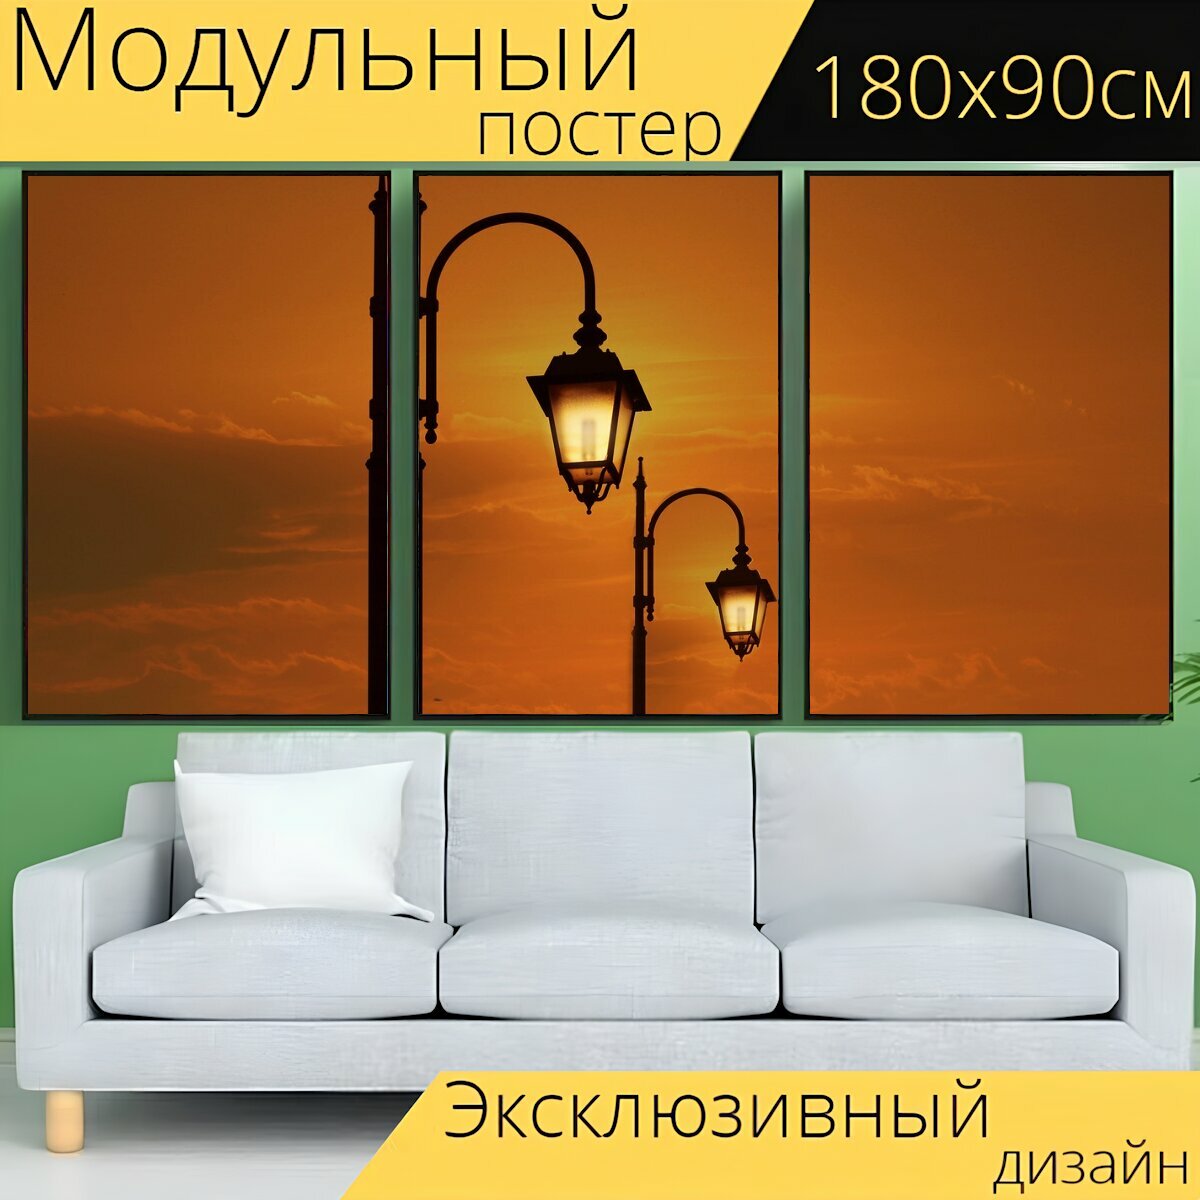 Модульный постер "Уличный фонарь, заход солнца, небеса" 180 x 90 см. для интерьера